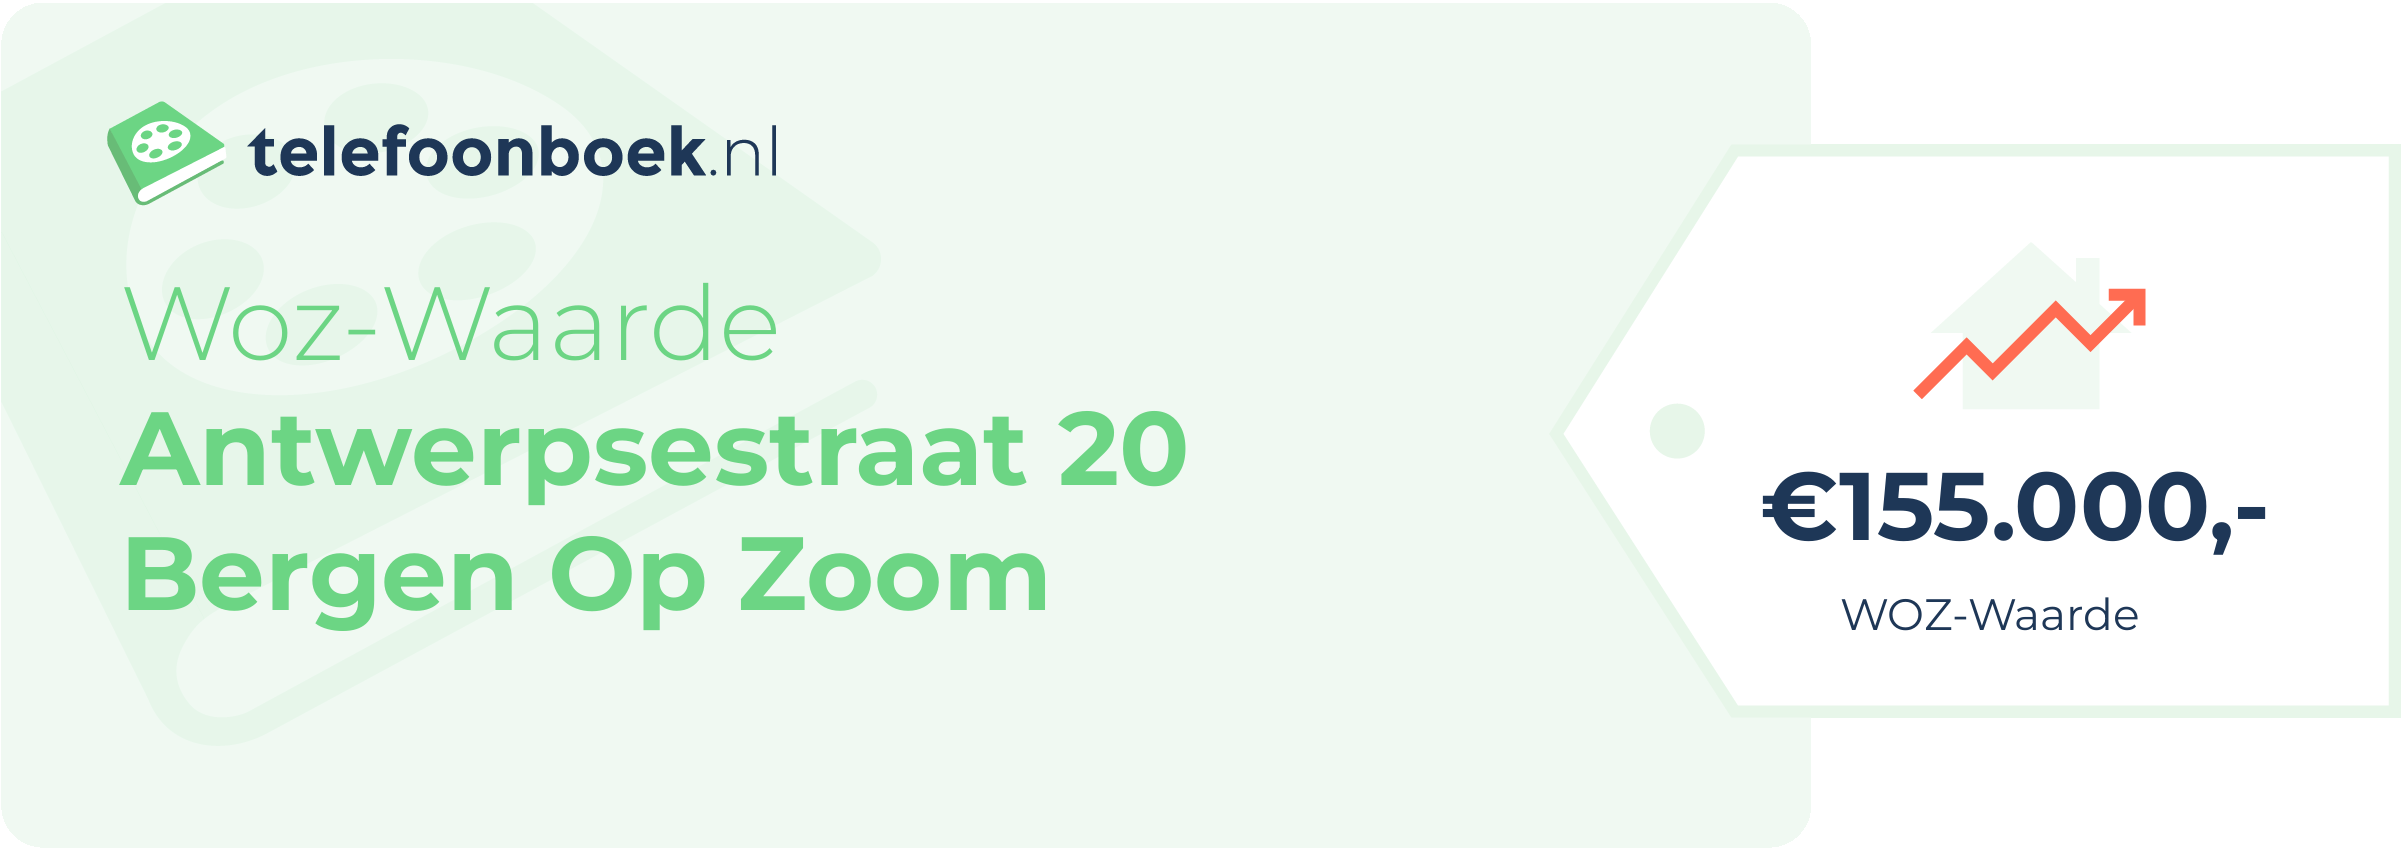 WOZ-waarde Antwerpsestraat 20 Bergen Op Zoom